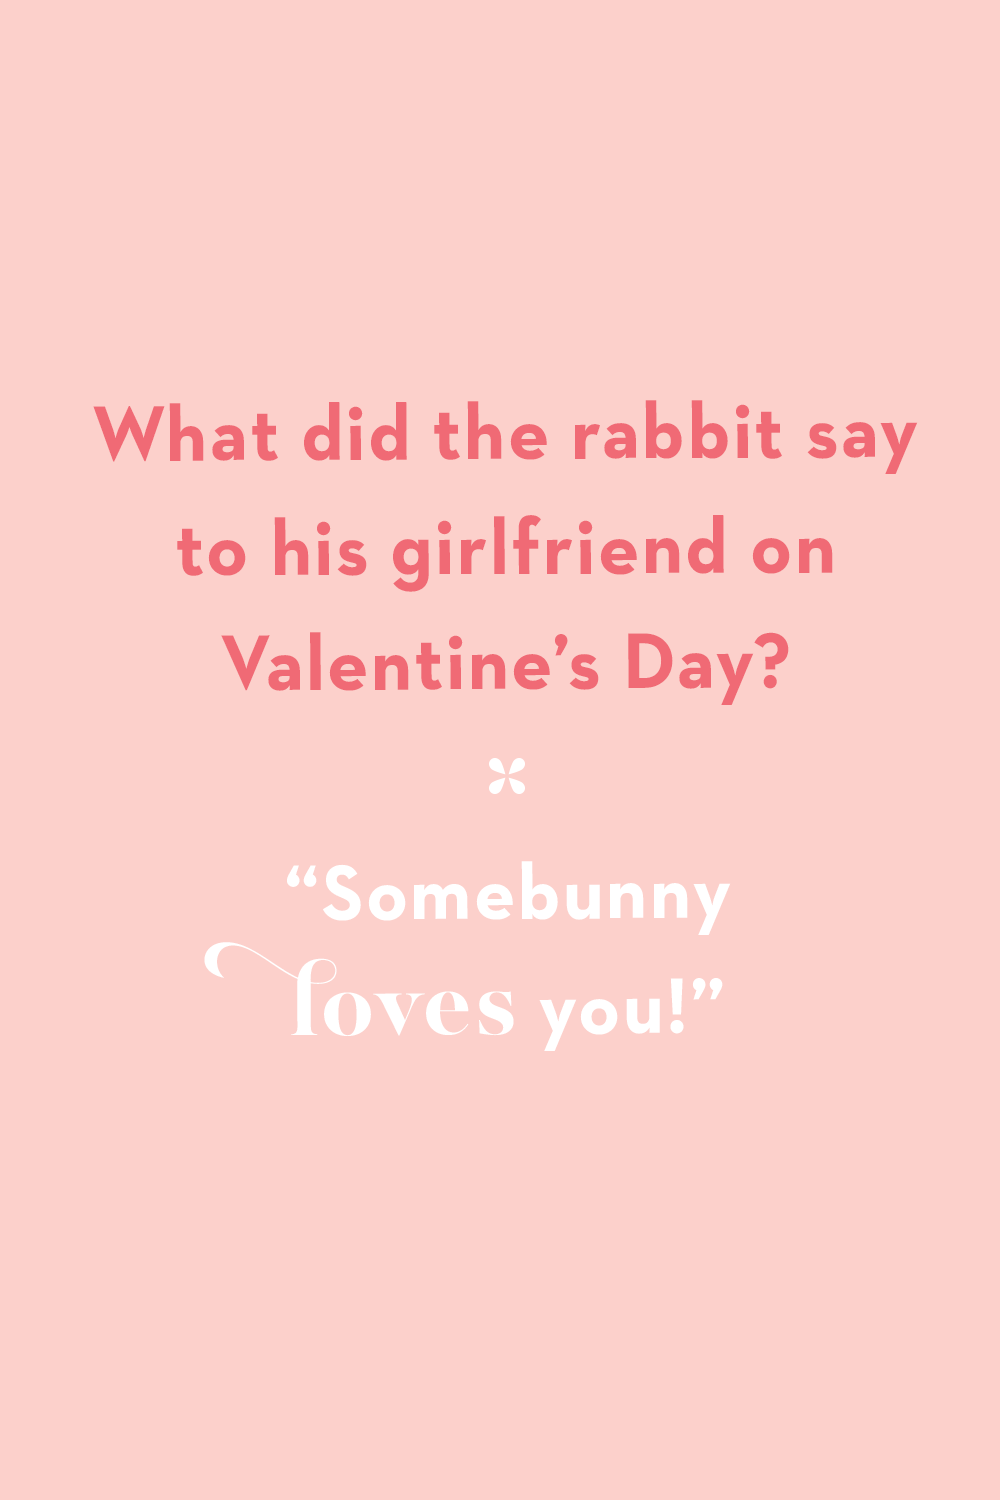 Valentine’s Day Jokes